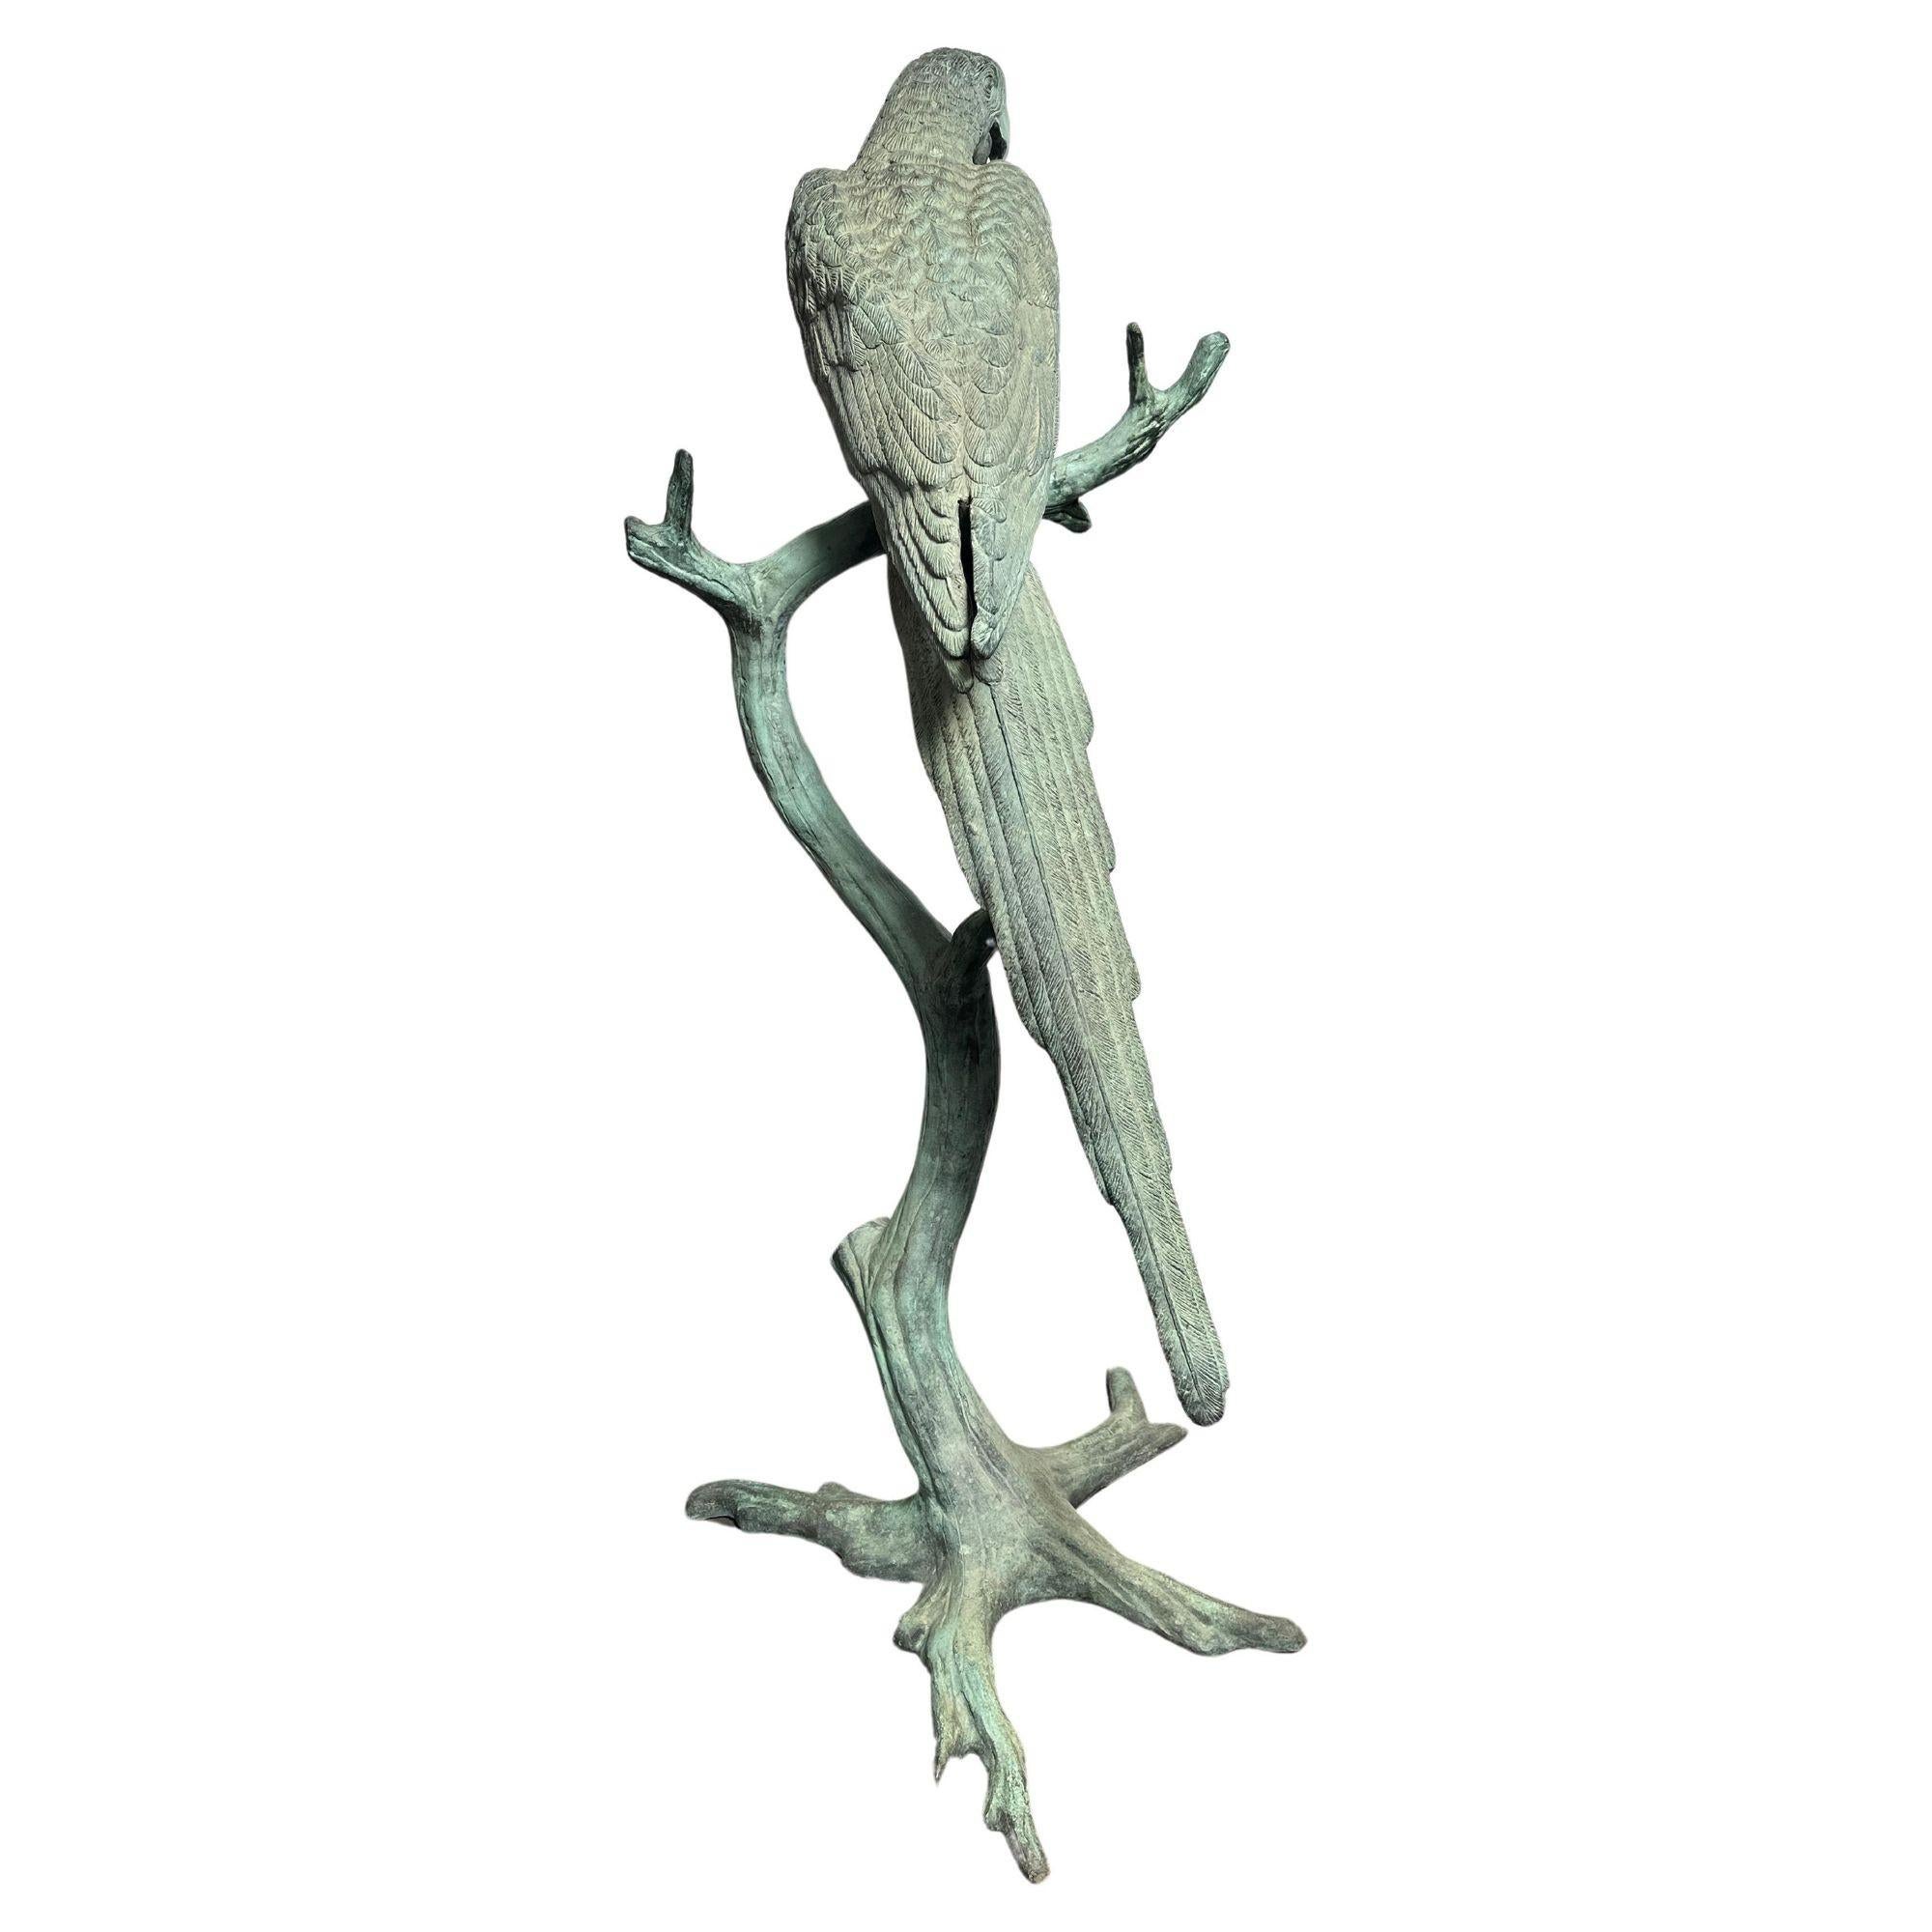 Vintage sculpture en bronze surdimensionnée d'un perroquet avec patine en bronze vert d'après J. Moigniez. Cette sculpture est méticuleusement décorée de détails qui lui confèrent une impression de réalisme en plus de sa taille réelle.
La pièce